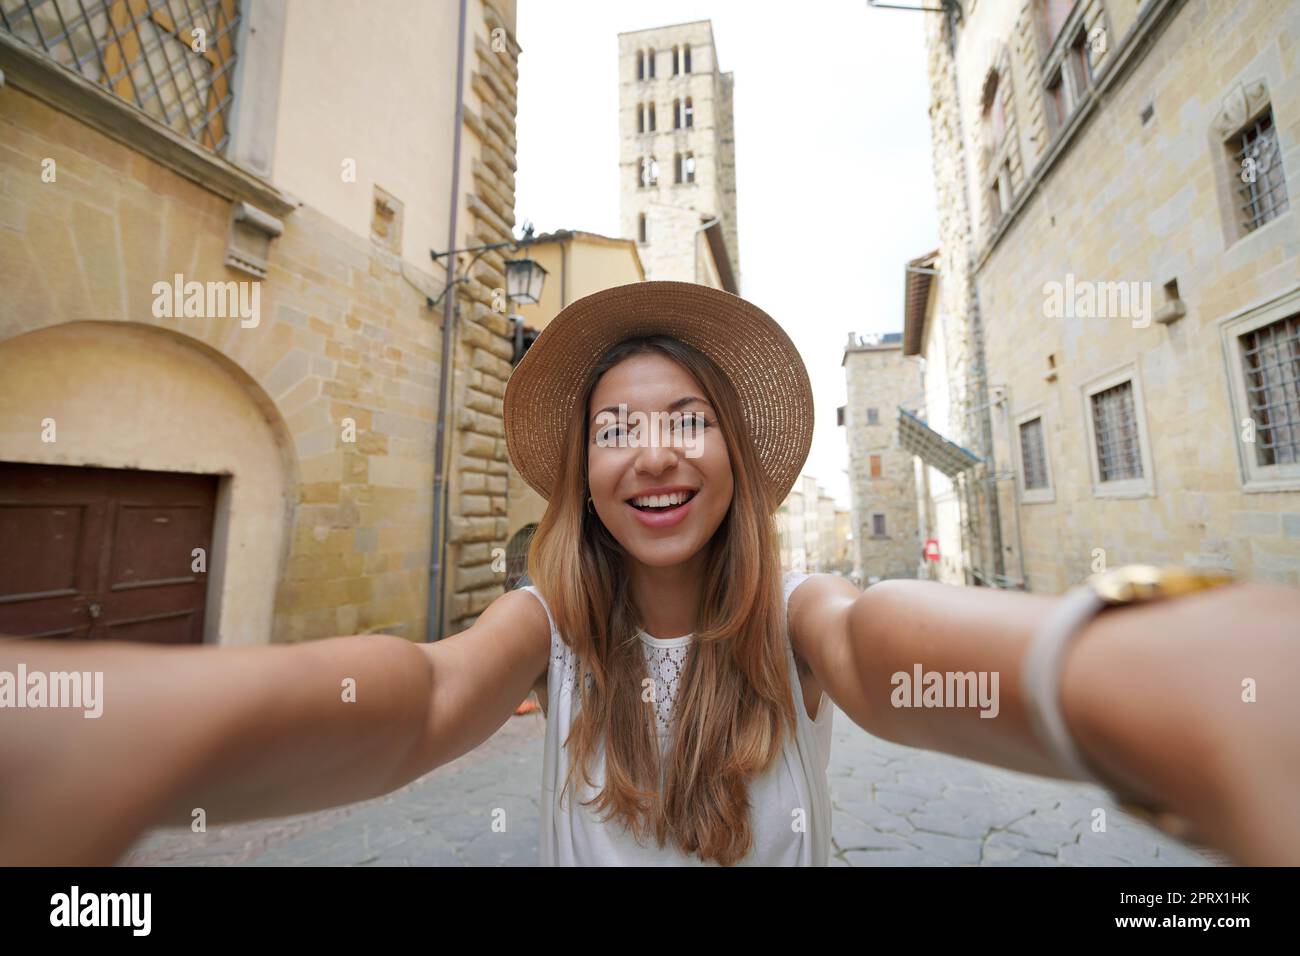 Selbstporträt von schönen touristischen Mädchen in der historischen Stadt Arezzo, Toskana, Italien Stockfoto